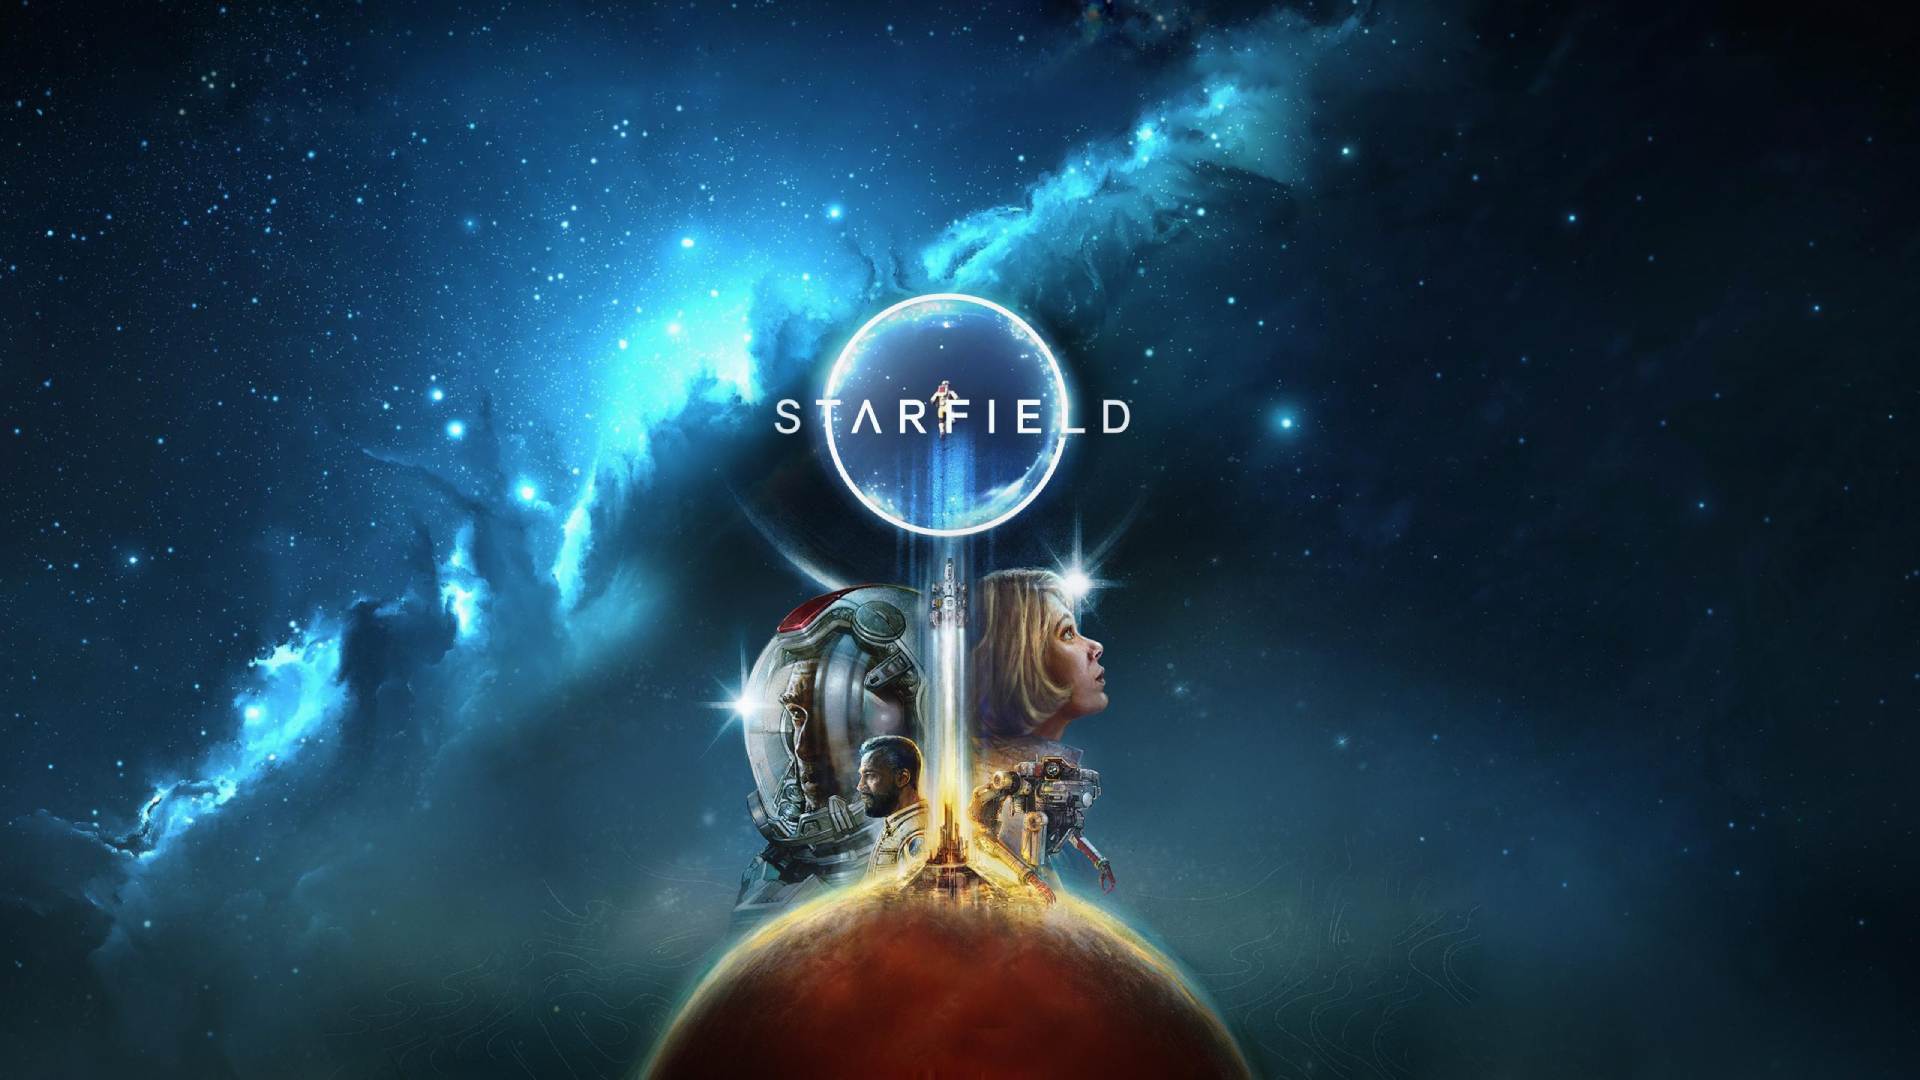 Starfield finalmente receberá 60 fps e veículos em update! Veja novidades